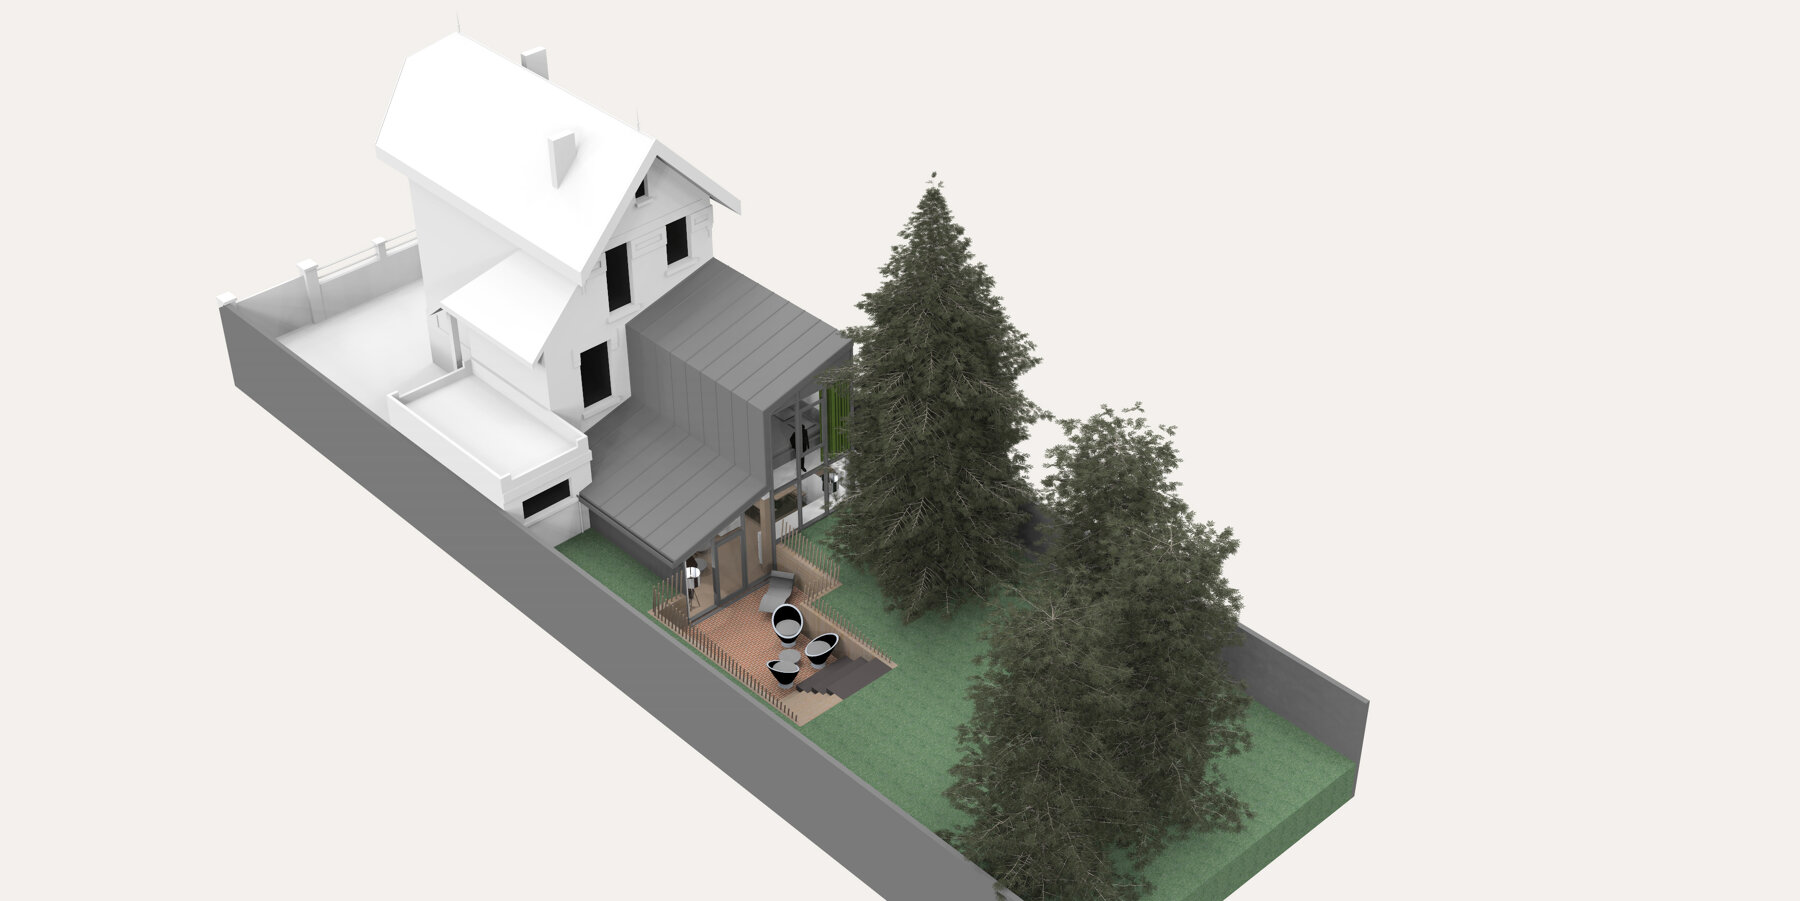 Construction neuve - Maison individuelle par un architecte Archidvisor